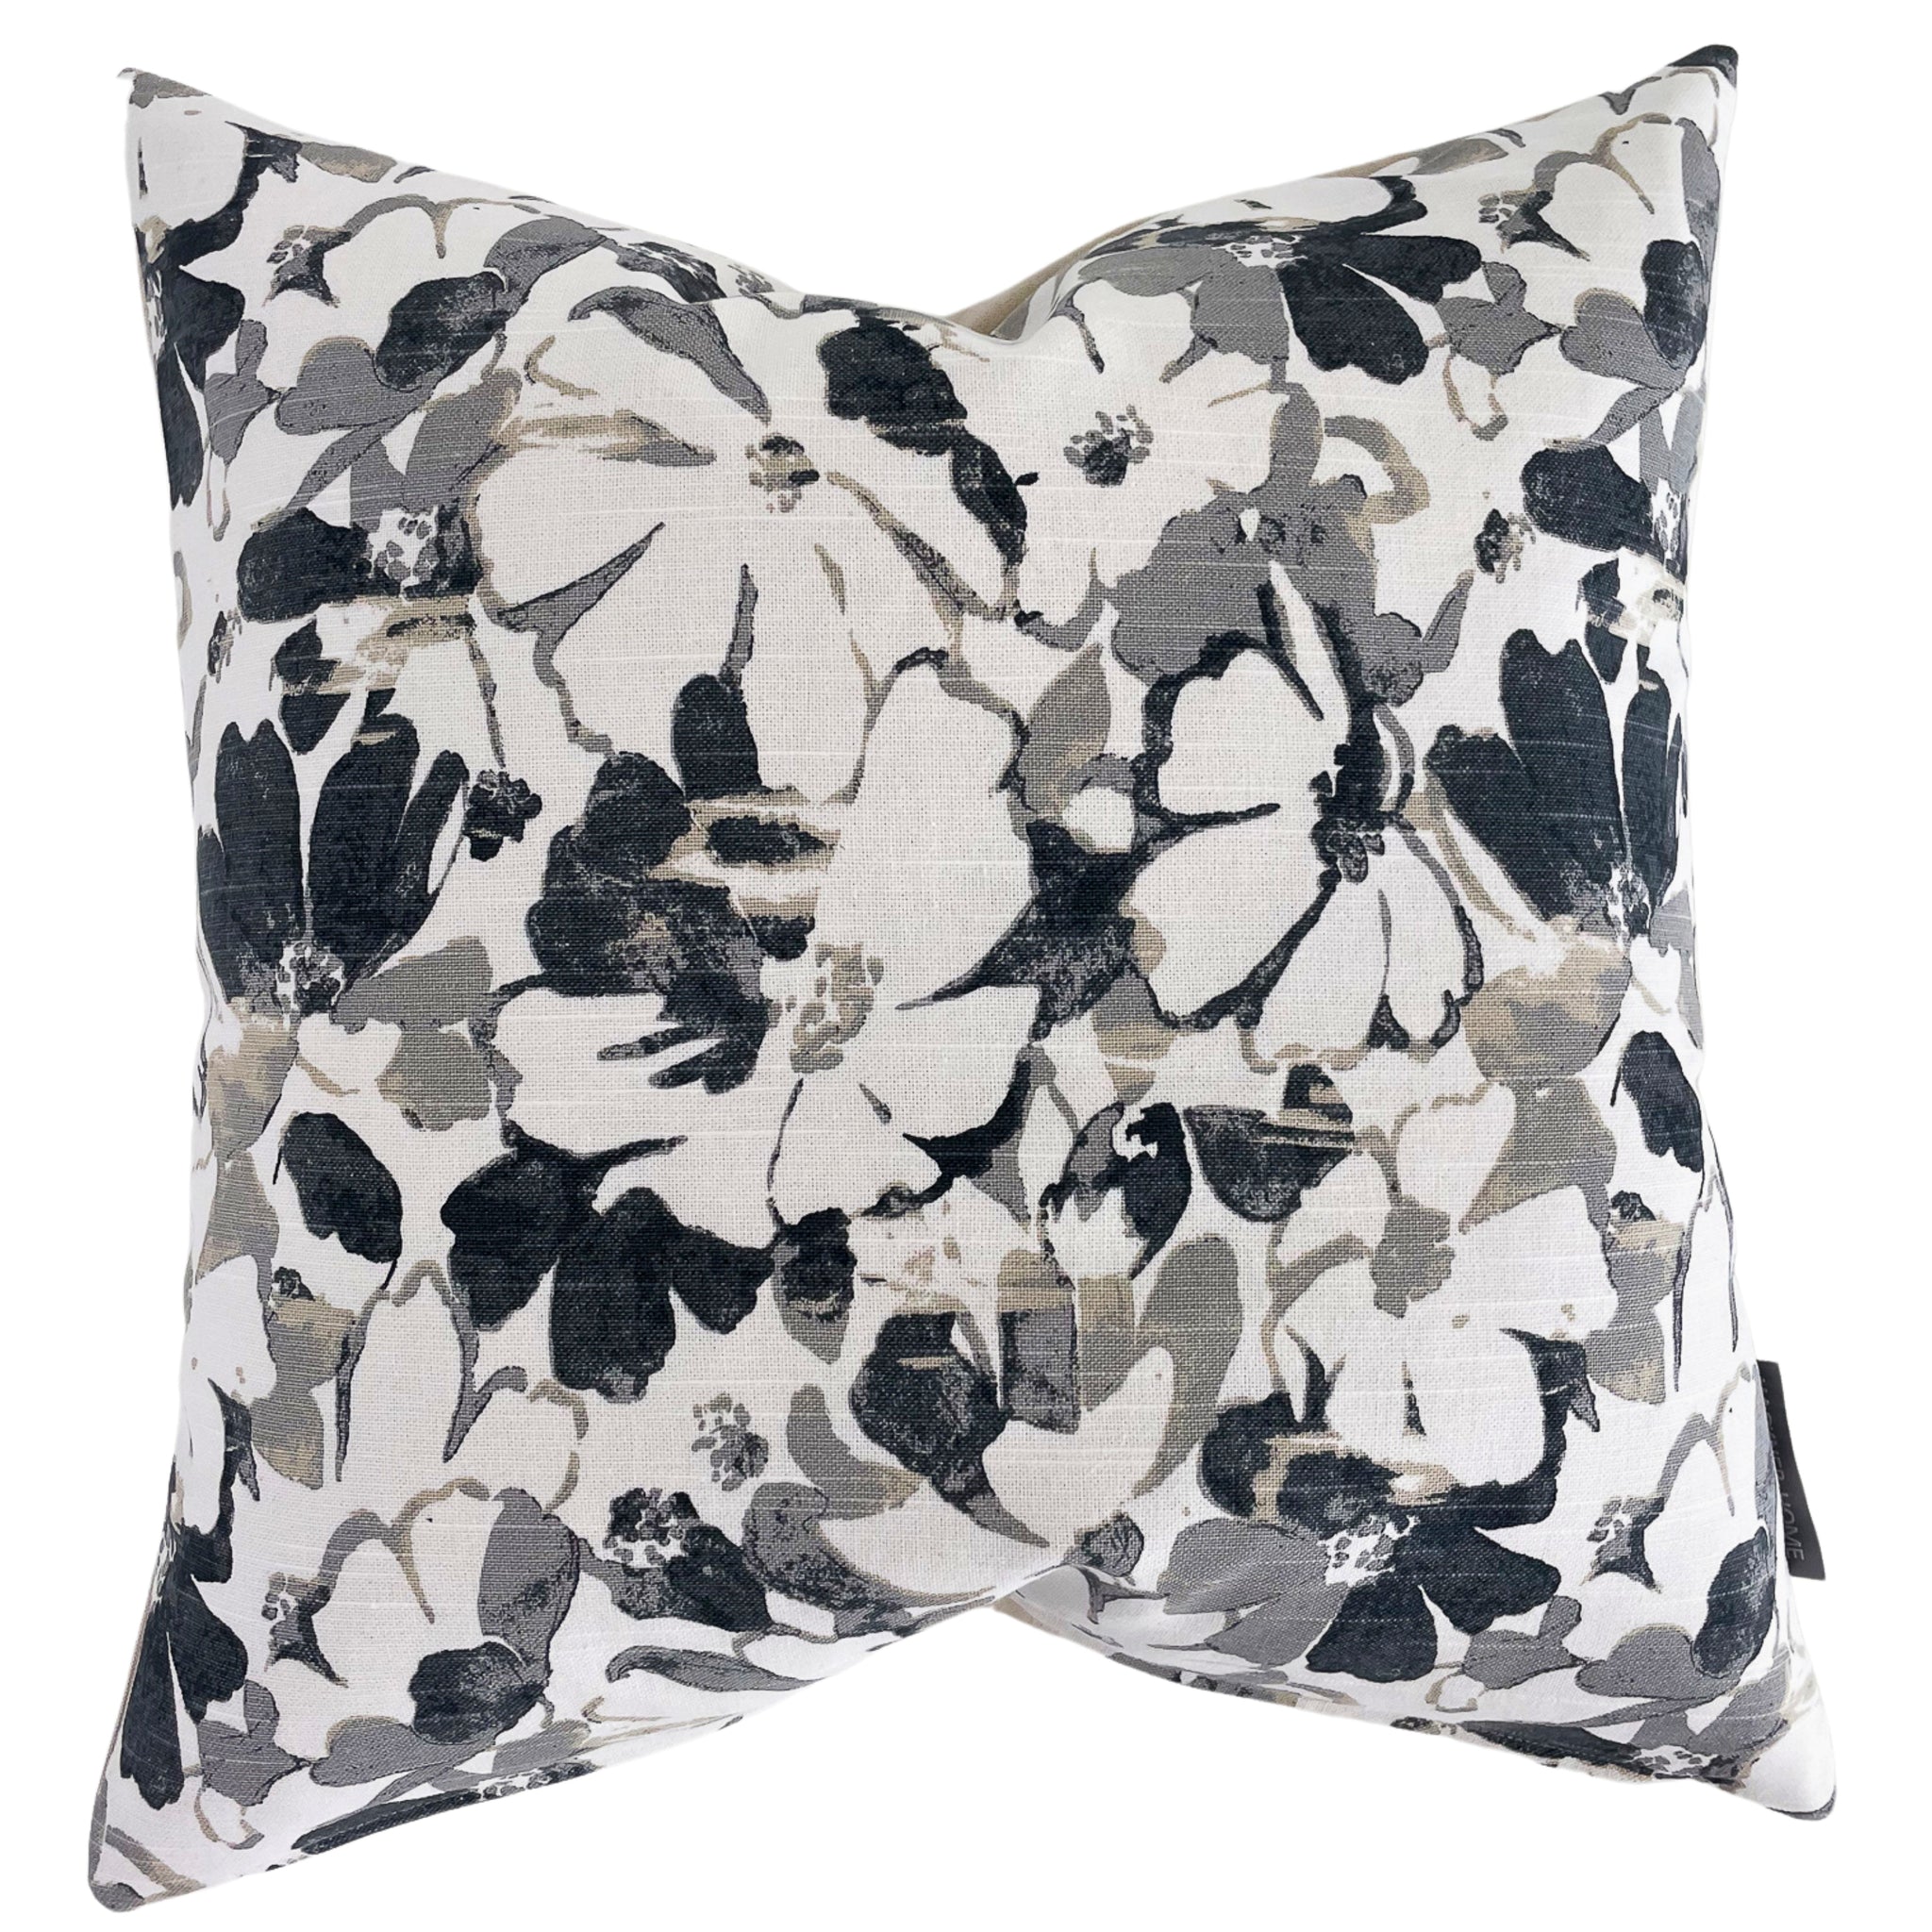 Gray Pillows, Gray Floral Pillow, Neutral Pillows, Sofa Pillow Covers, Decorative Pillows, Designer Pillows, Hackner Home, High End Pillows, Interior Decor Pillows, Shabby Chic Pillows